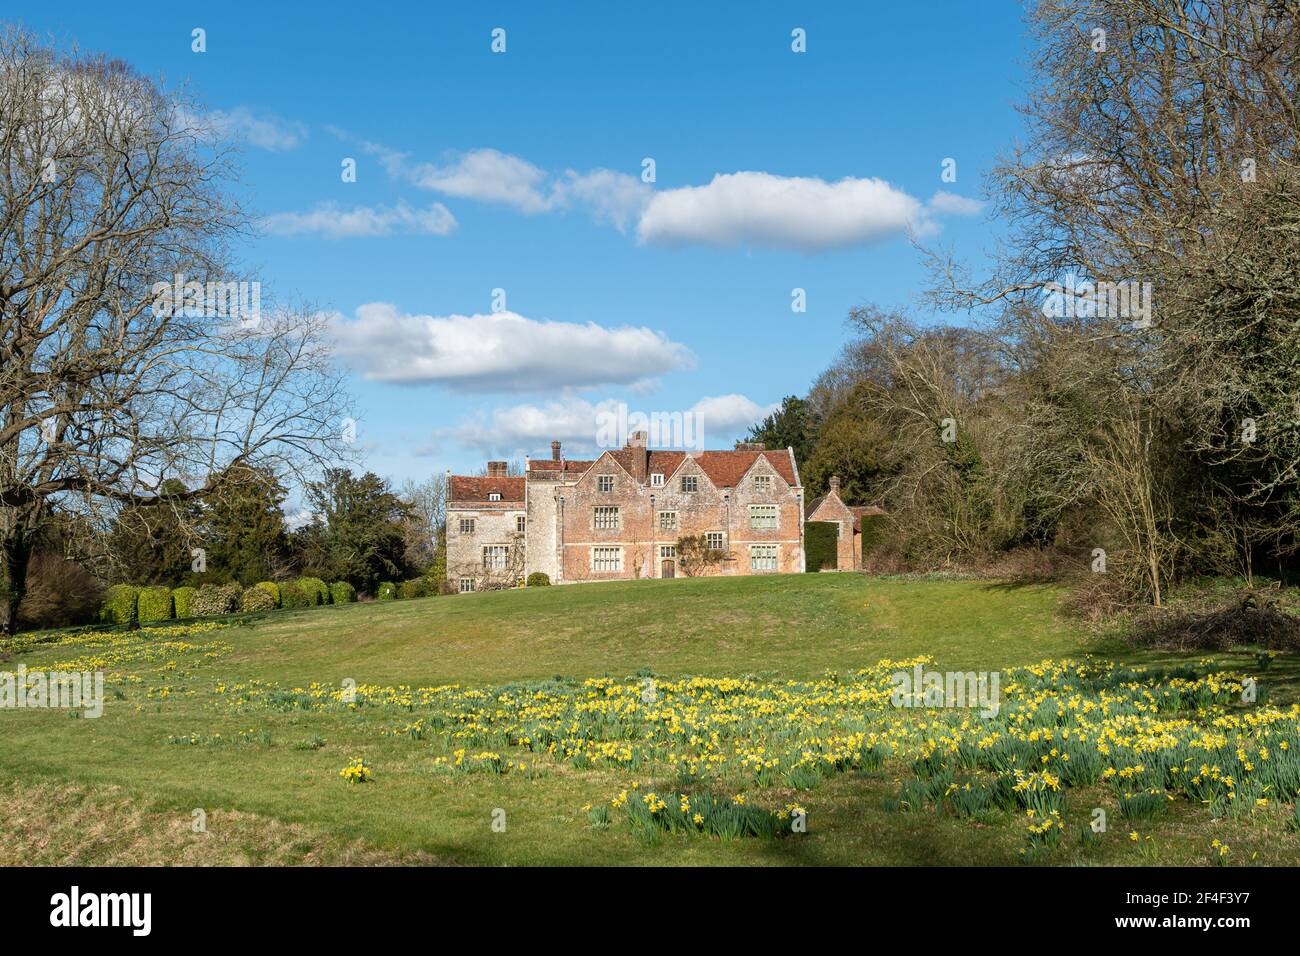 Chawton House, una residenza elisabettiana di grado ll* in Hampshire, Inghilterra, Regno Unito, in primavera o marzo con narcisi in fiore Foto Stock